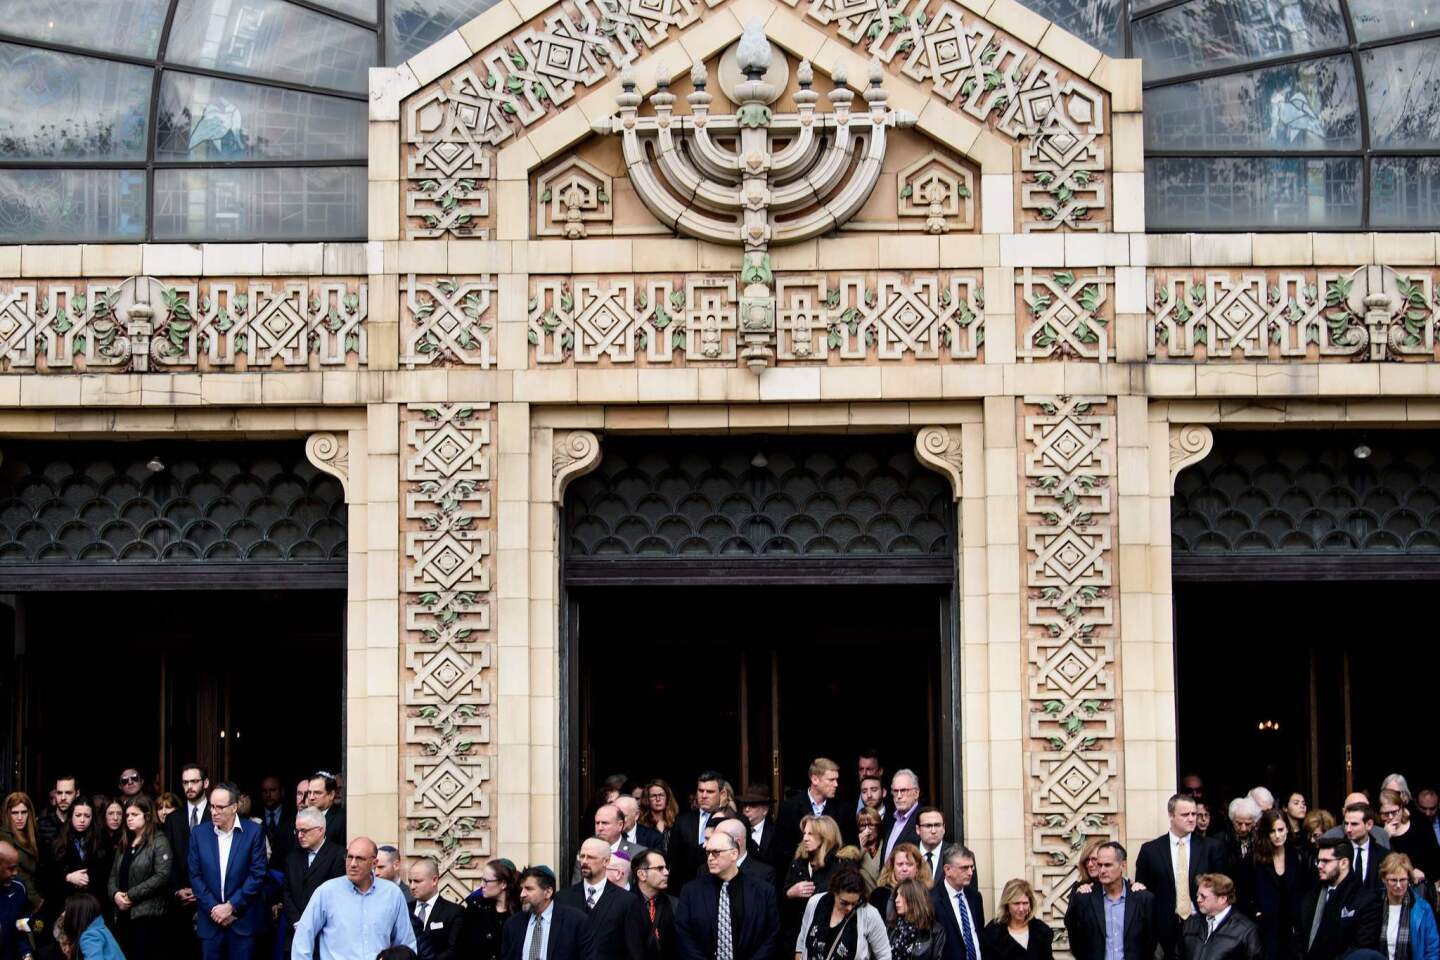 Synagogue shooting